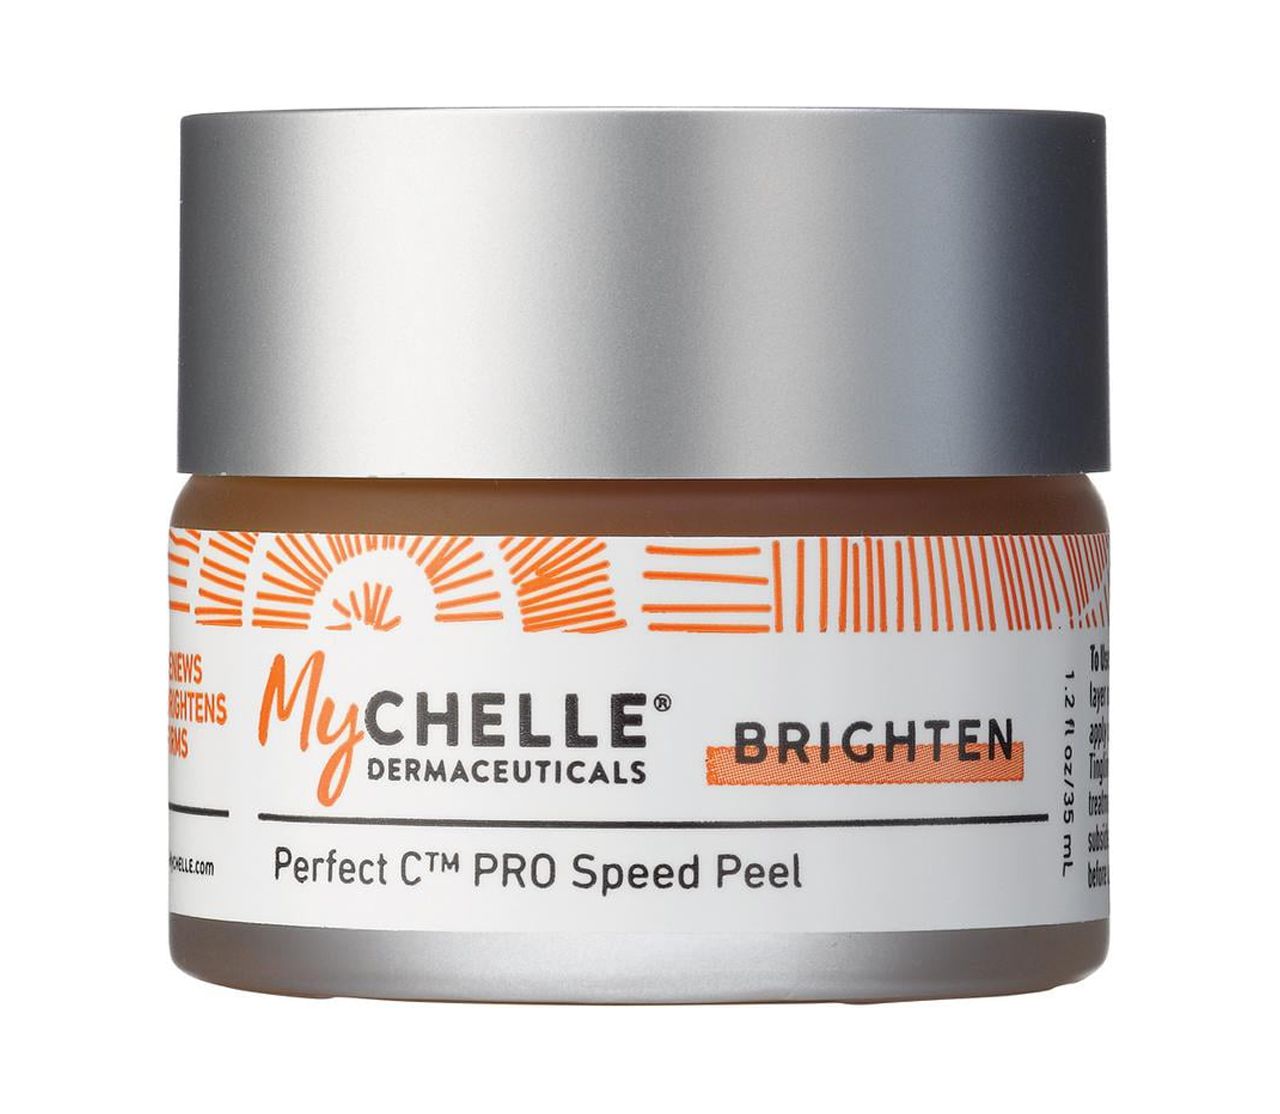 MyChelle Perfect C PRO Speed Peel, 1.2 Oz - image 1 of 6